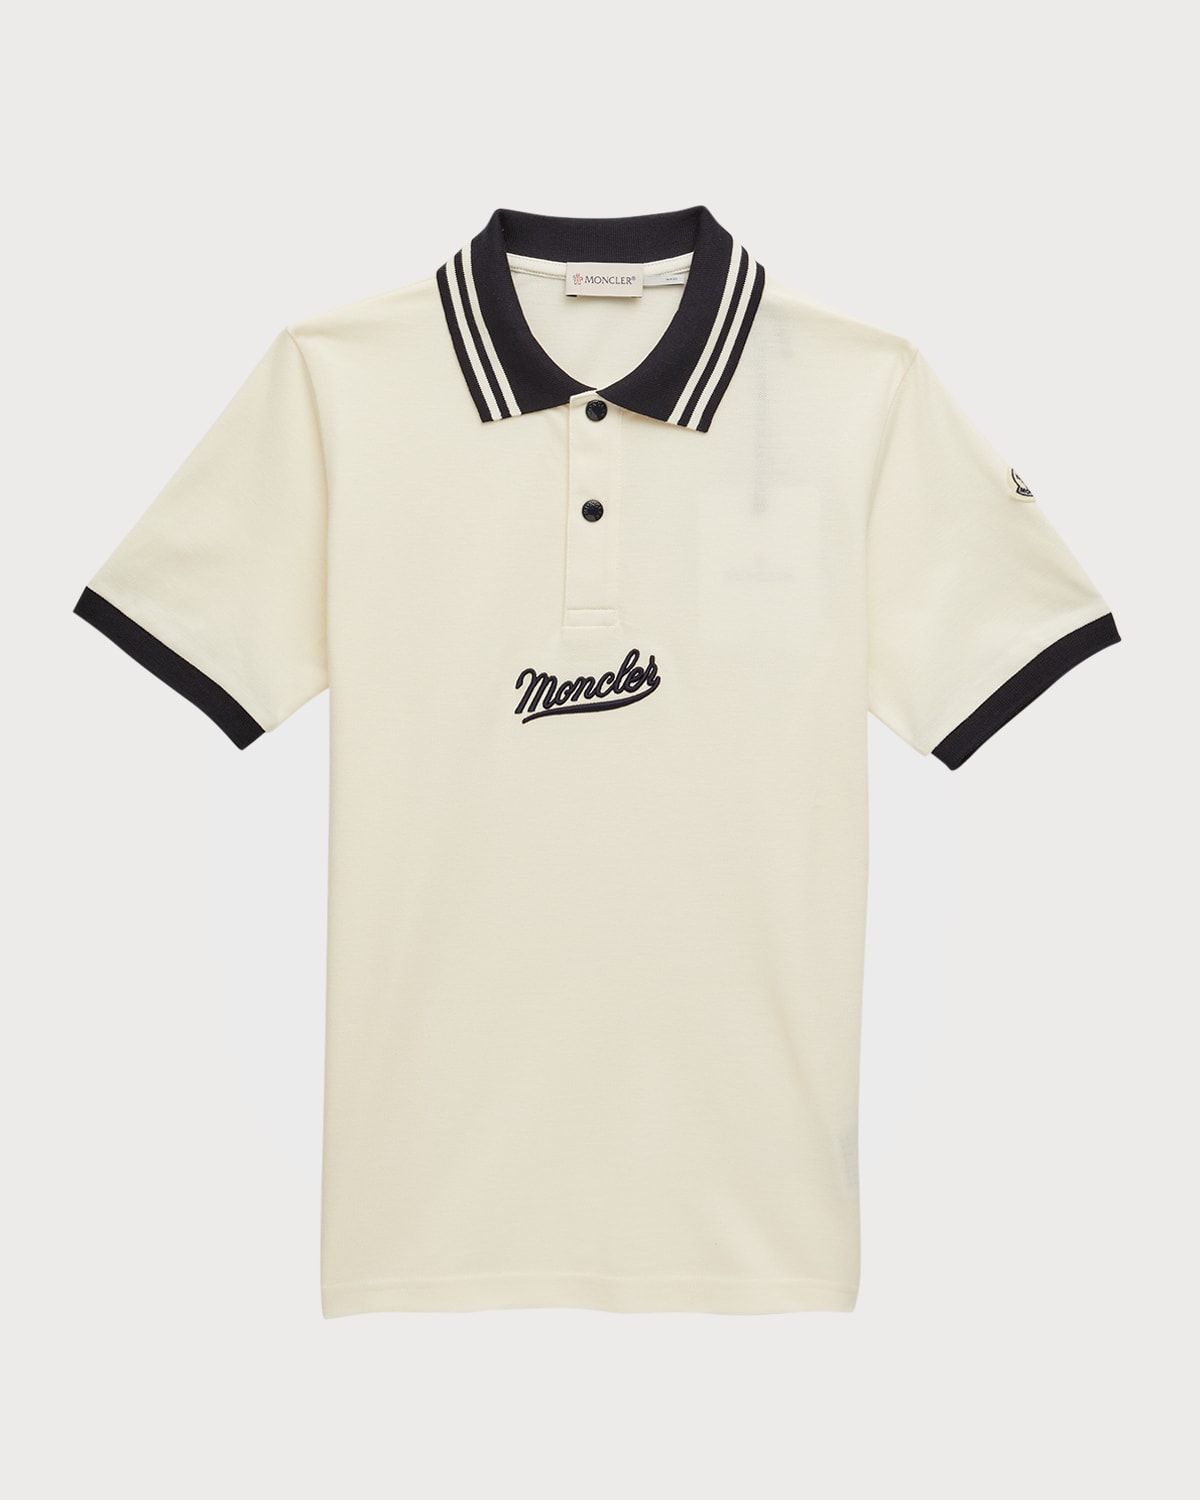 Boy's Script Applique Polo Shirt, Size 8-14